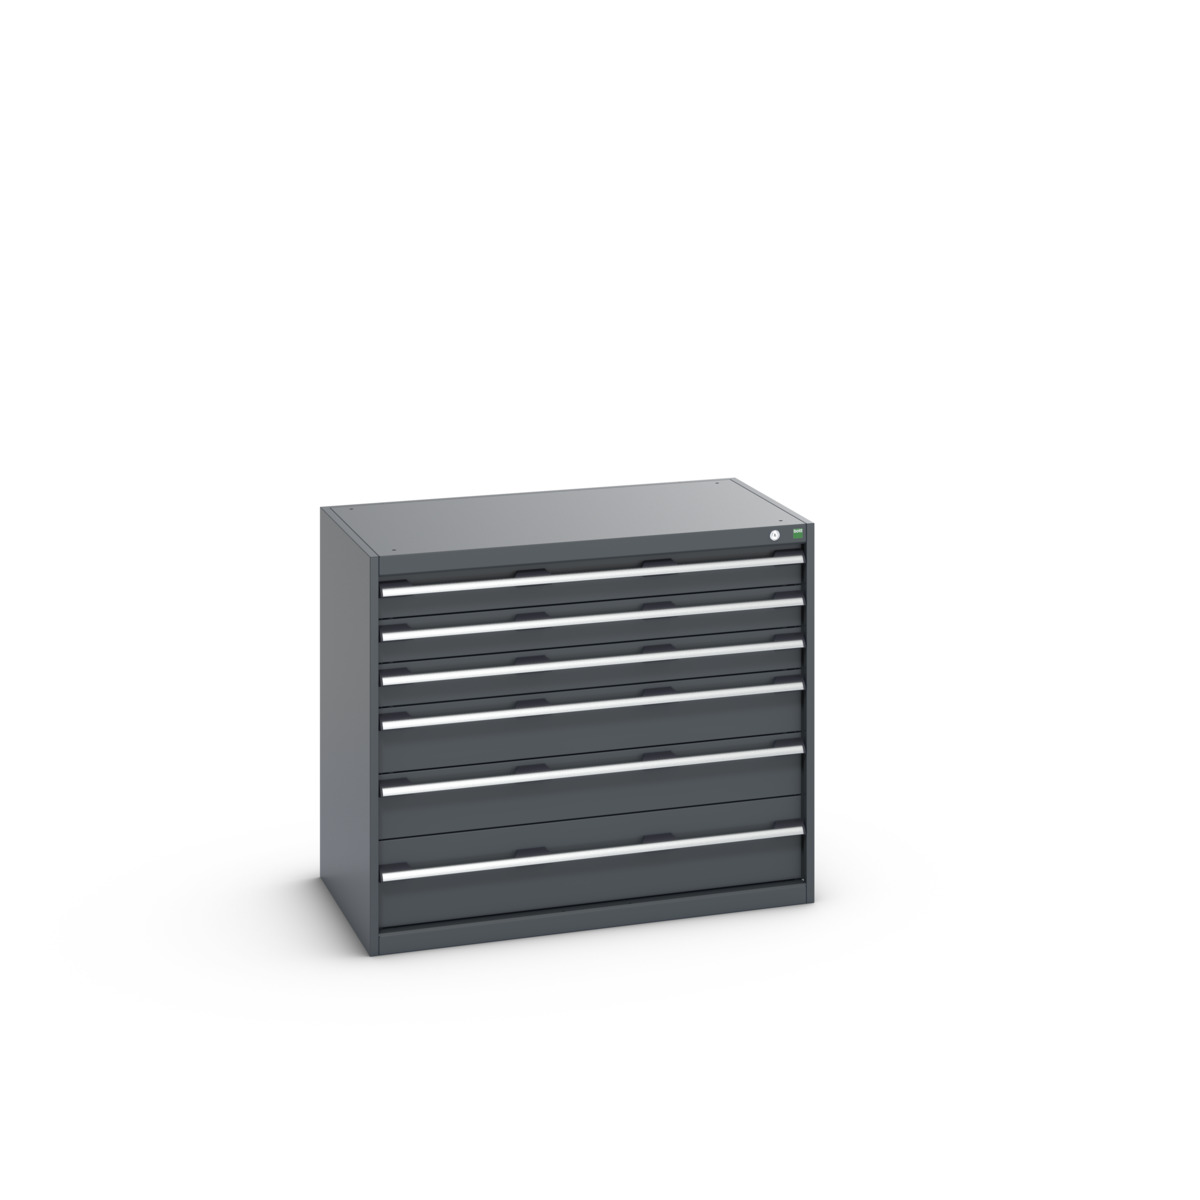 40021223.77V - cubio drawer cabinet